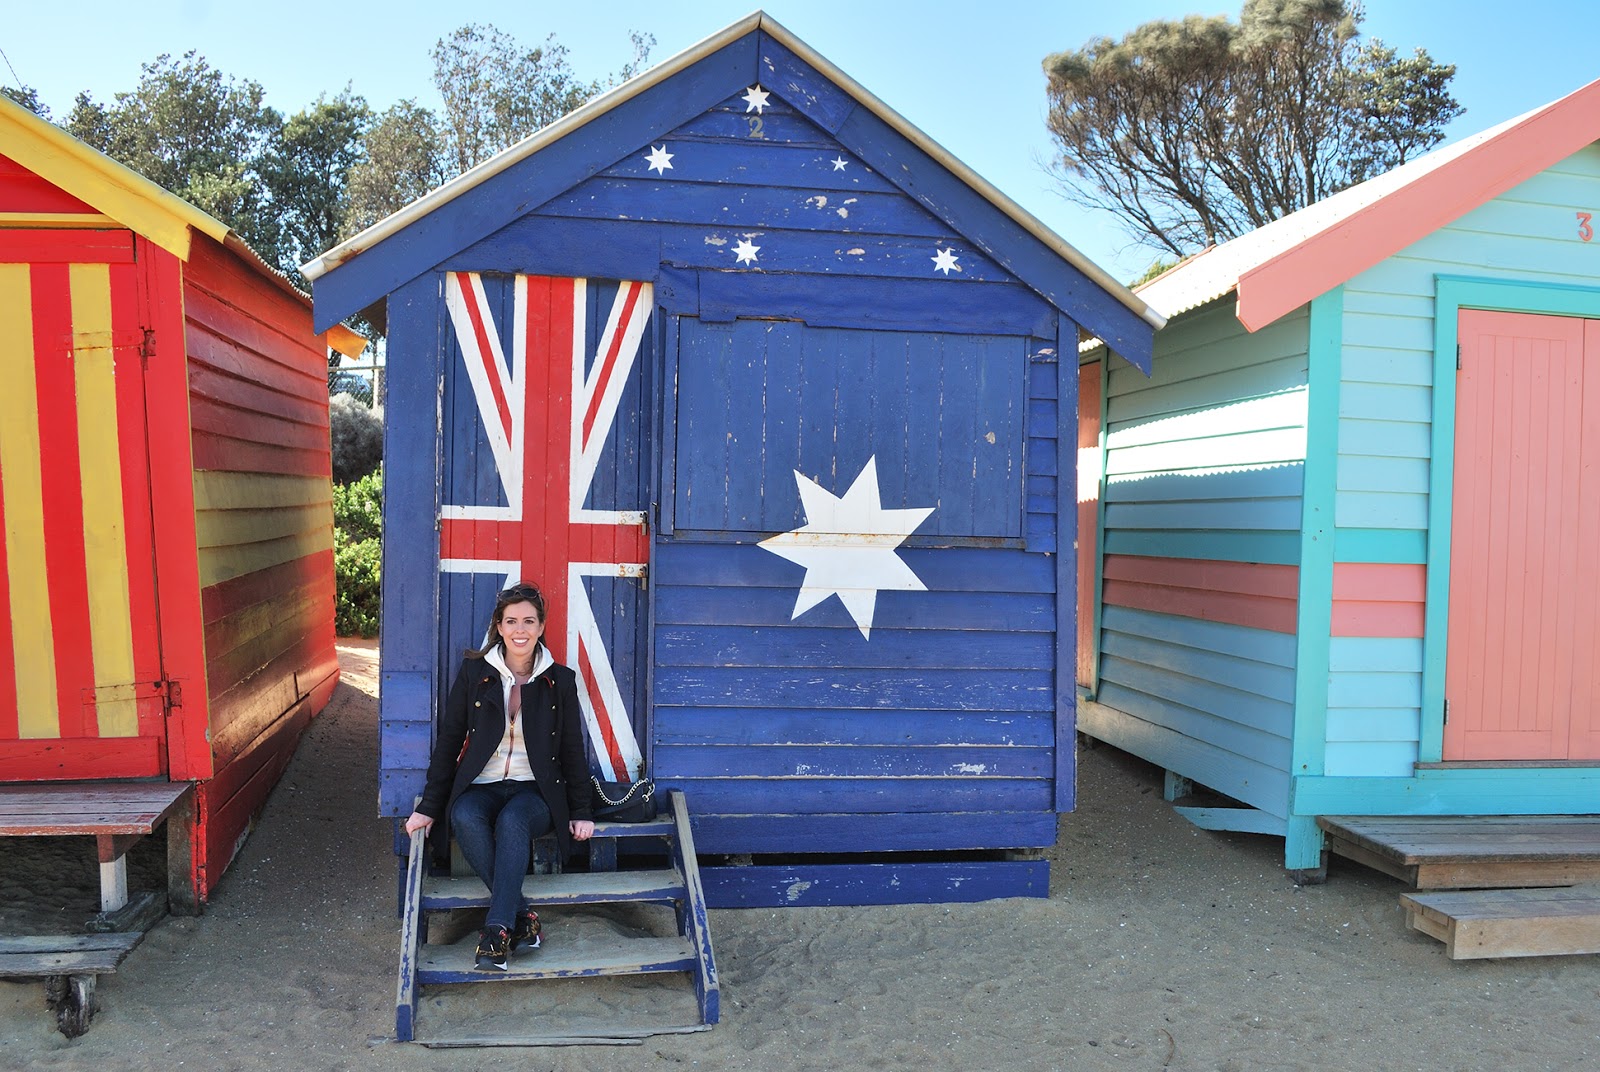 brighton beach bathing boxes melbourne australia